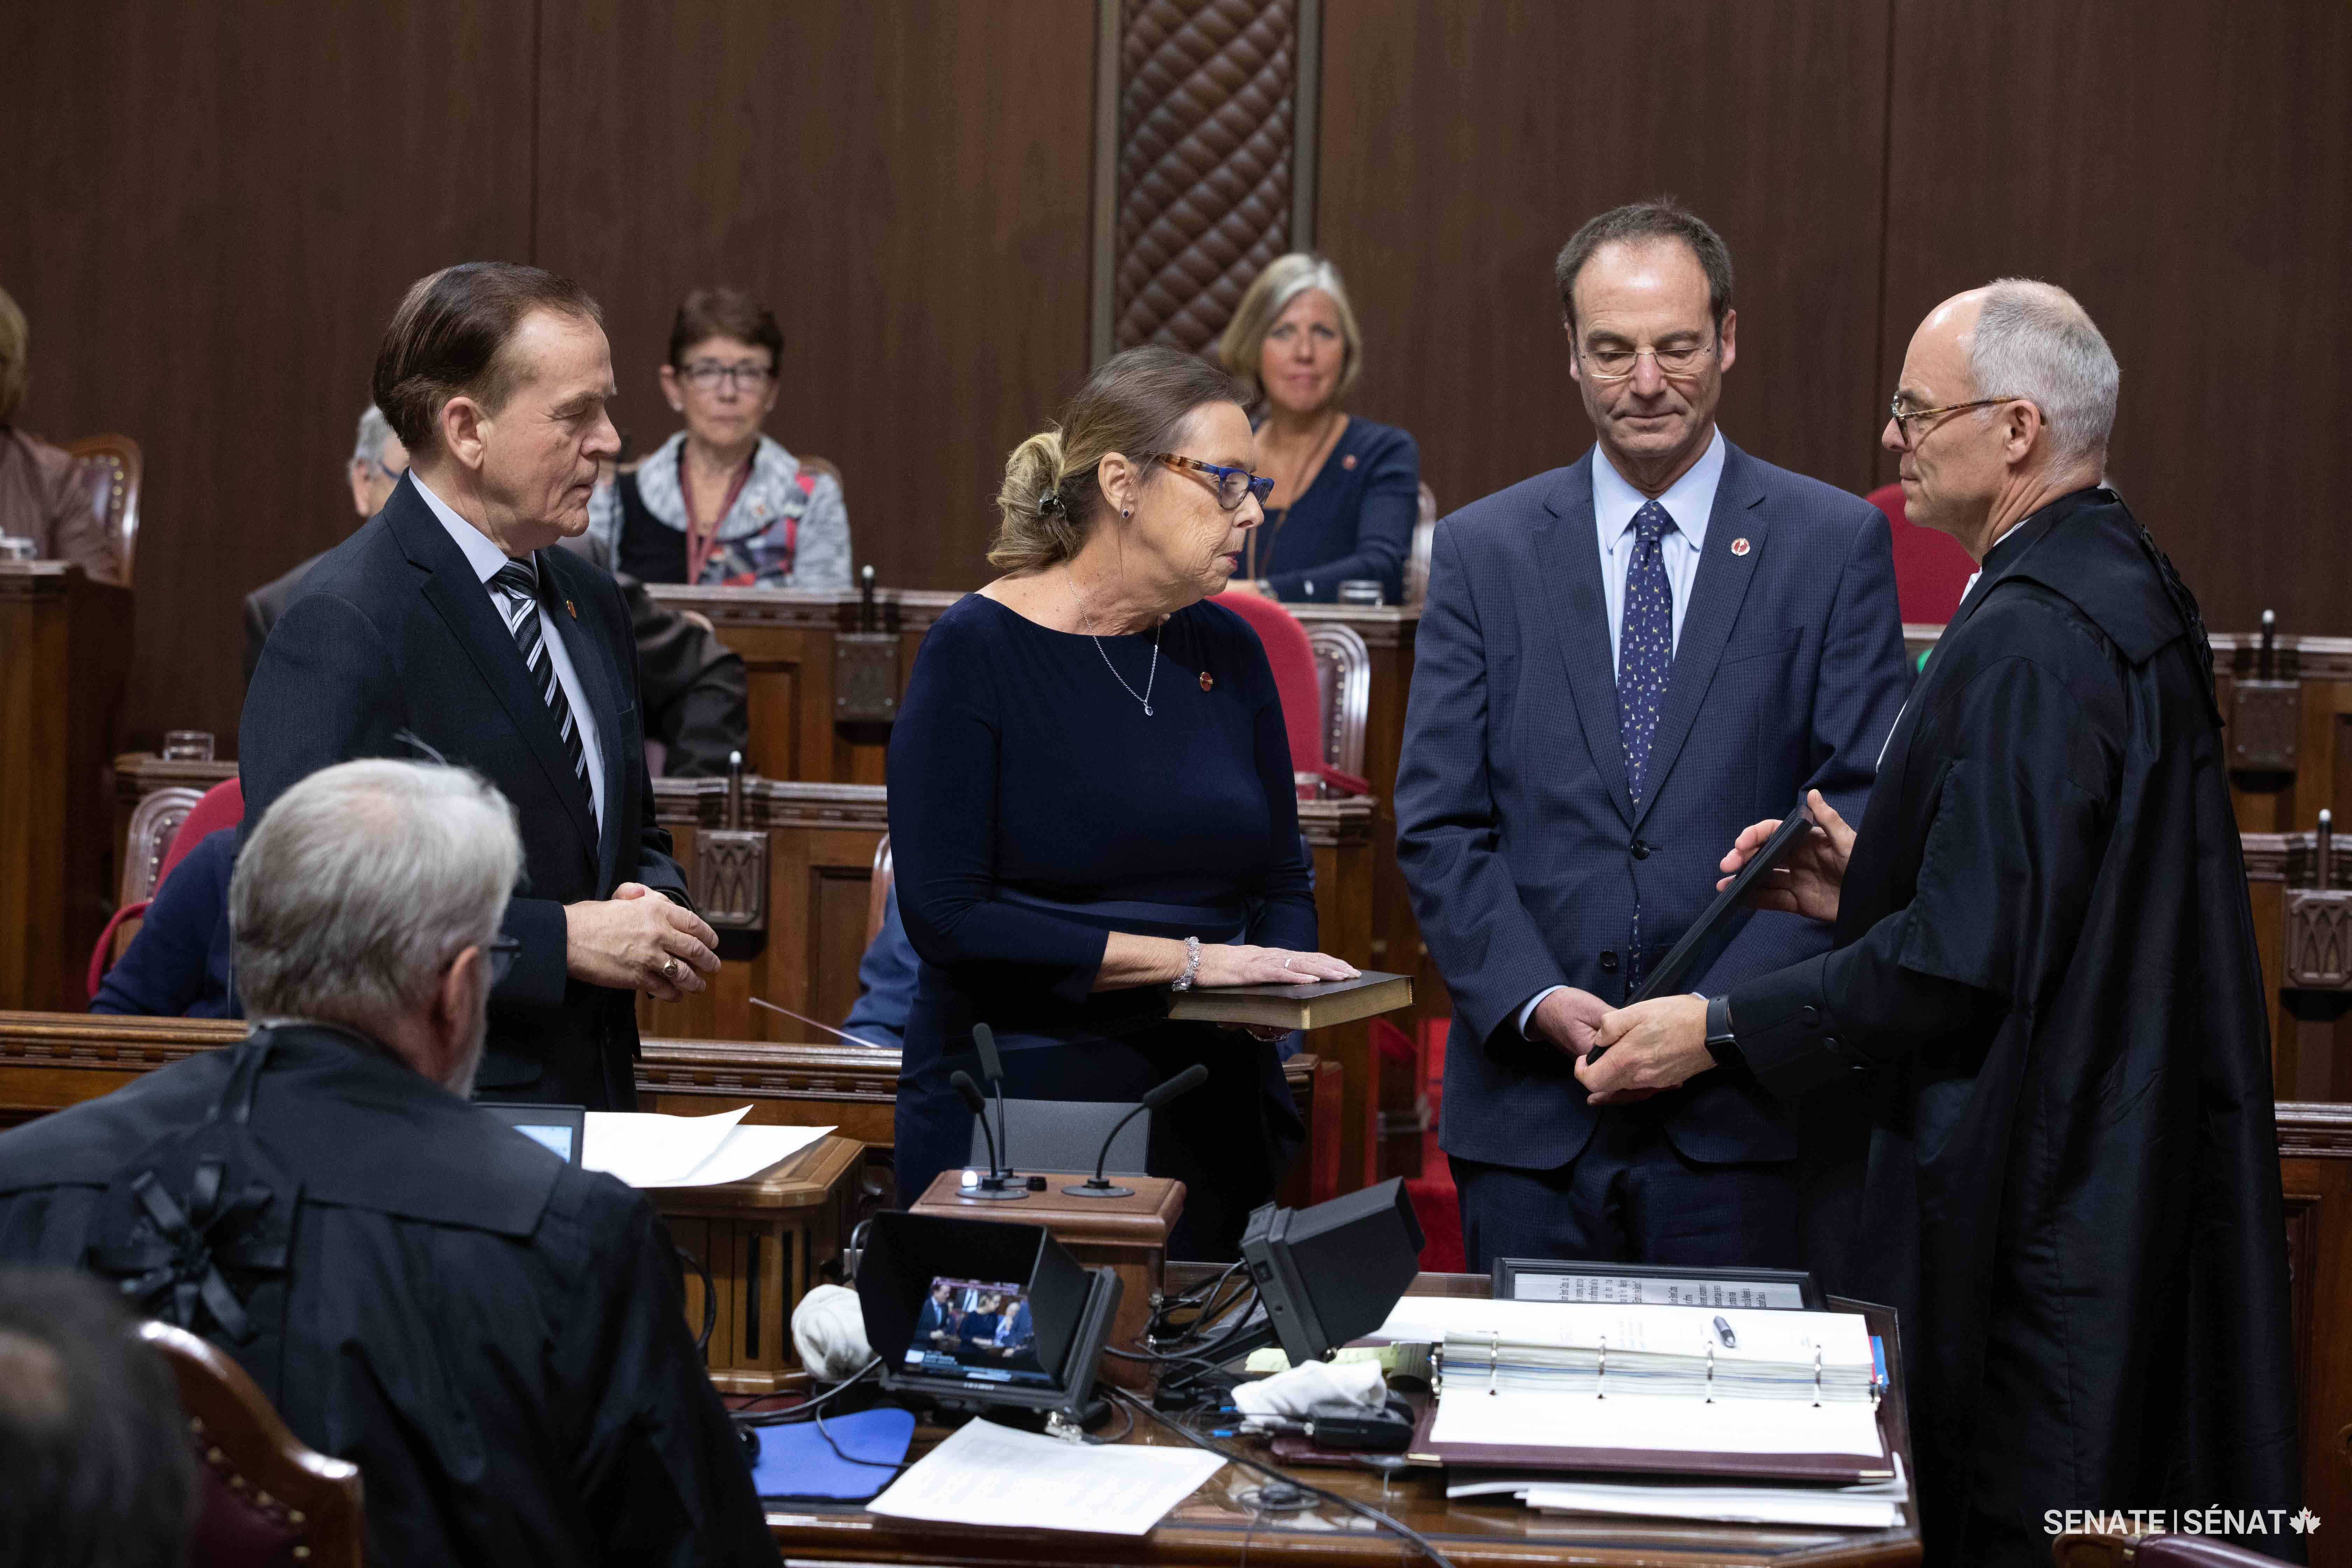 Cérémonie d’assermentation de la sénatrice Keating, qui a eu lieu dans l’édifice du Sénat du Canada le 4 février 2020. Elle avait été escortée dans la Chambre rouge par son parrain, le sénateur Percy Mockler du Nouveau-Brunswick (à gauche) et par le sénateur Marc Gold (à droite), représentant du gouvernement au Sénat.